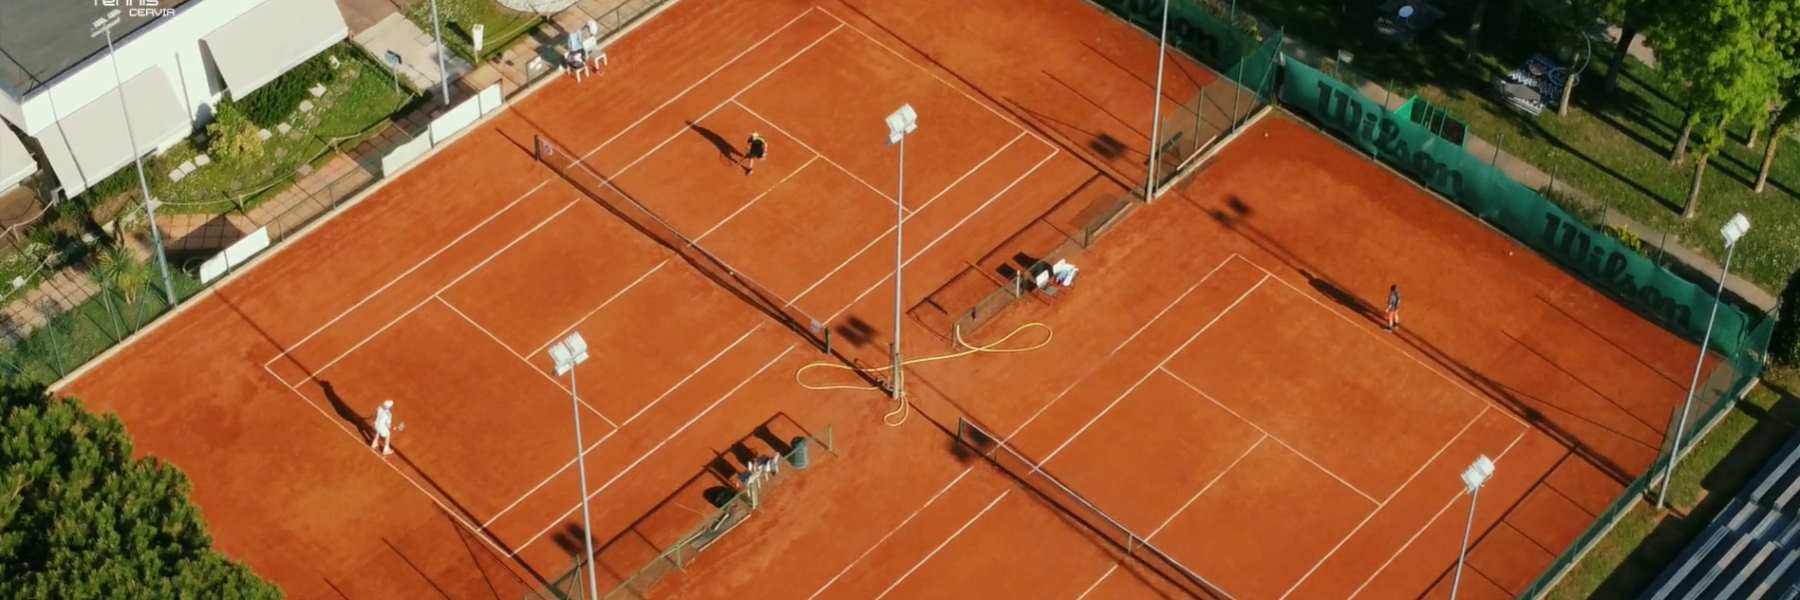 Tennis Club Cervia - Milano Marittima